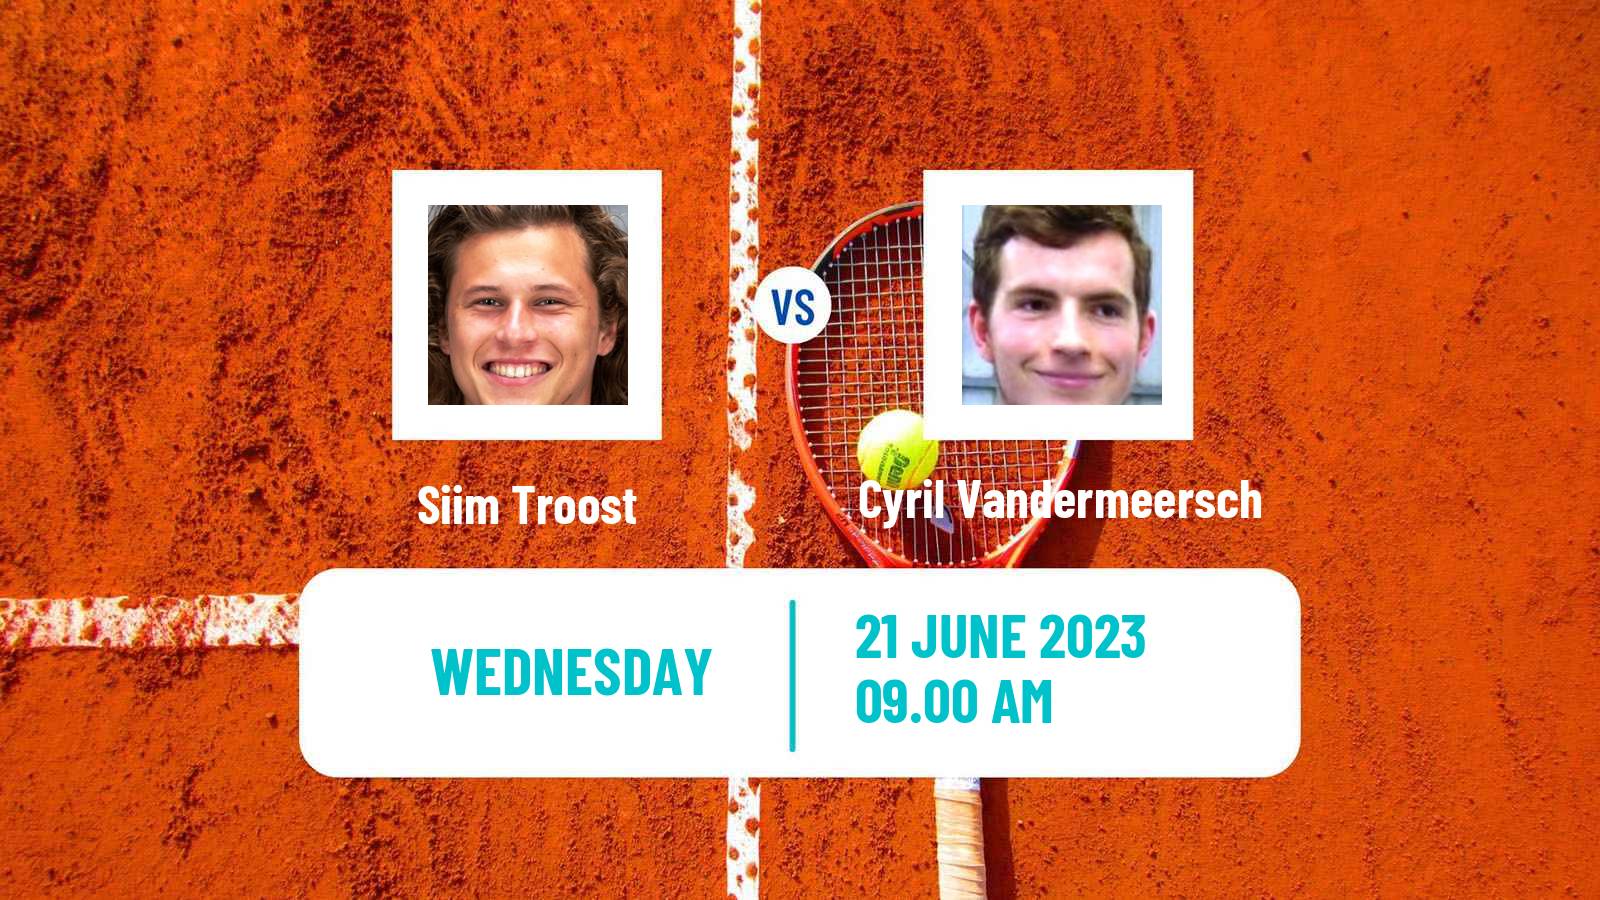 Tennis ITF M15 Monastir 25 Men Siim Troost - Cyril Vandermeersch